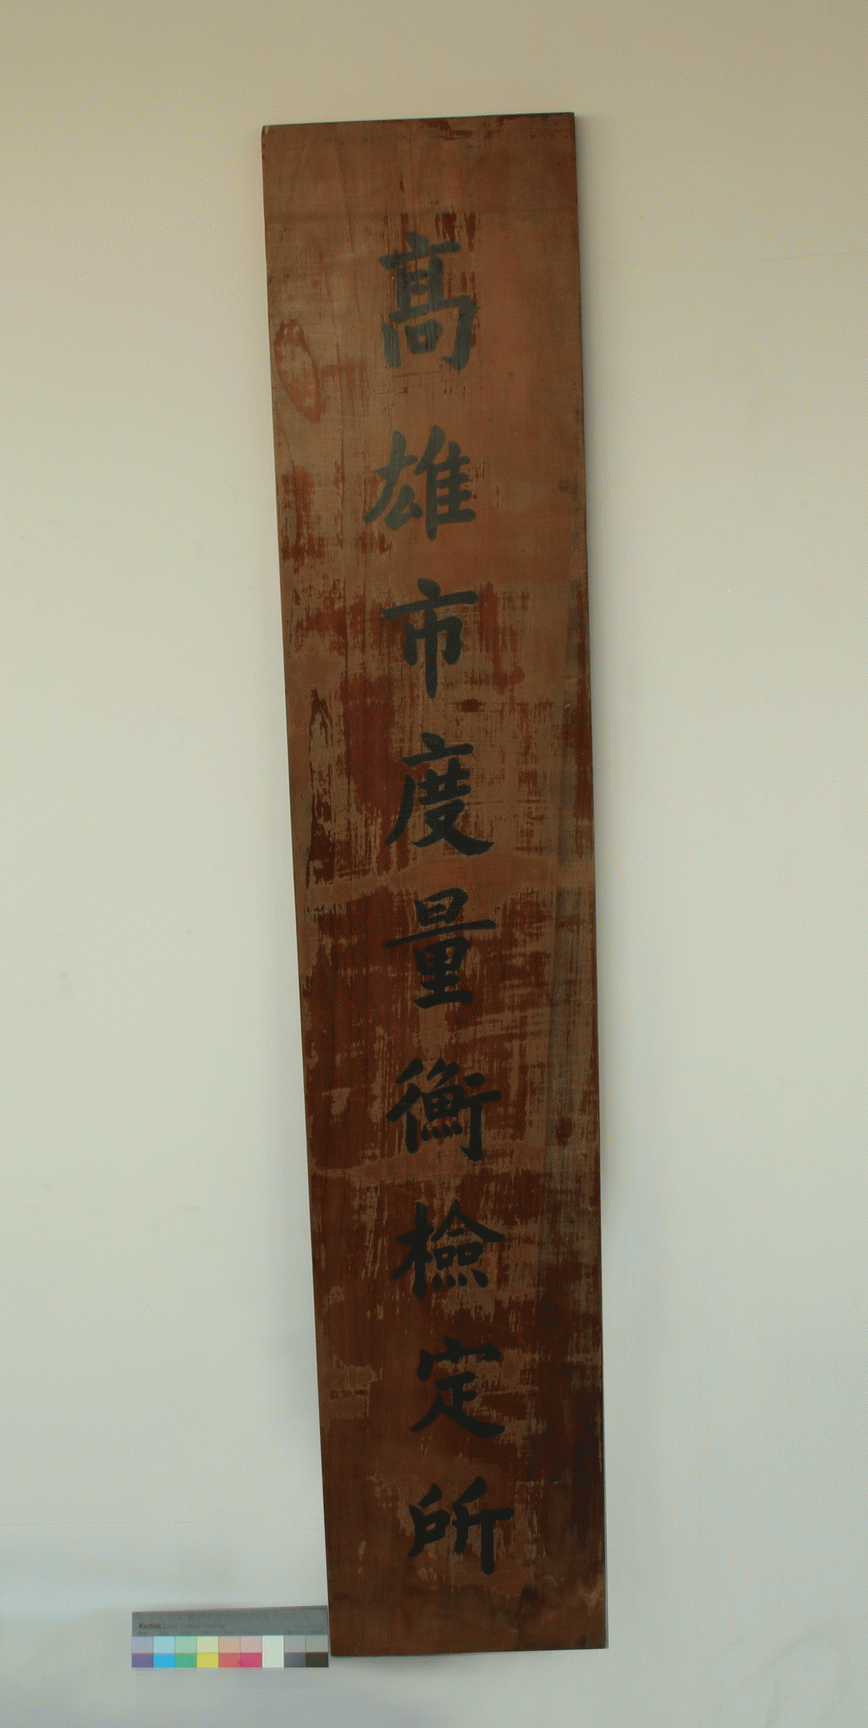 「高雄市度量衡檢定所」木製銜牌,共0張圖片